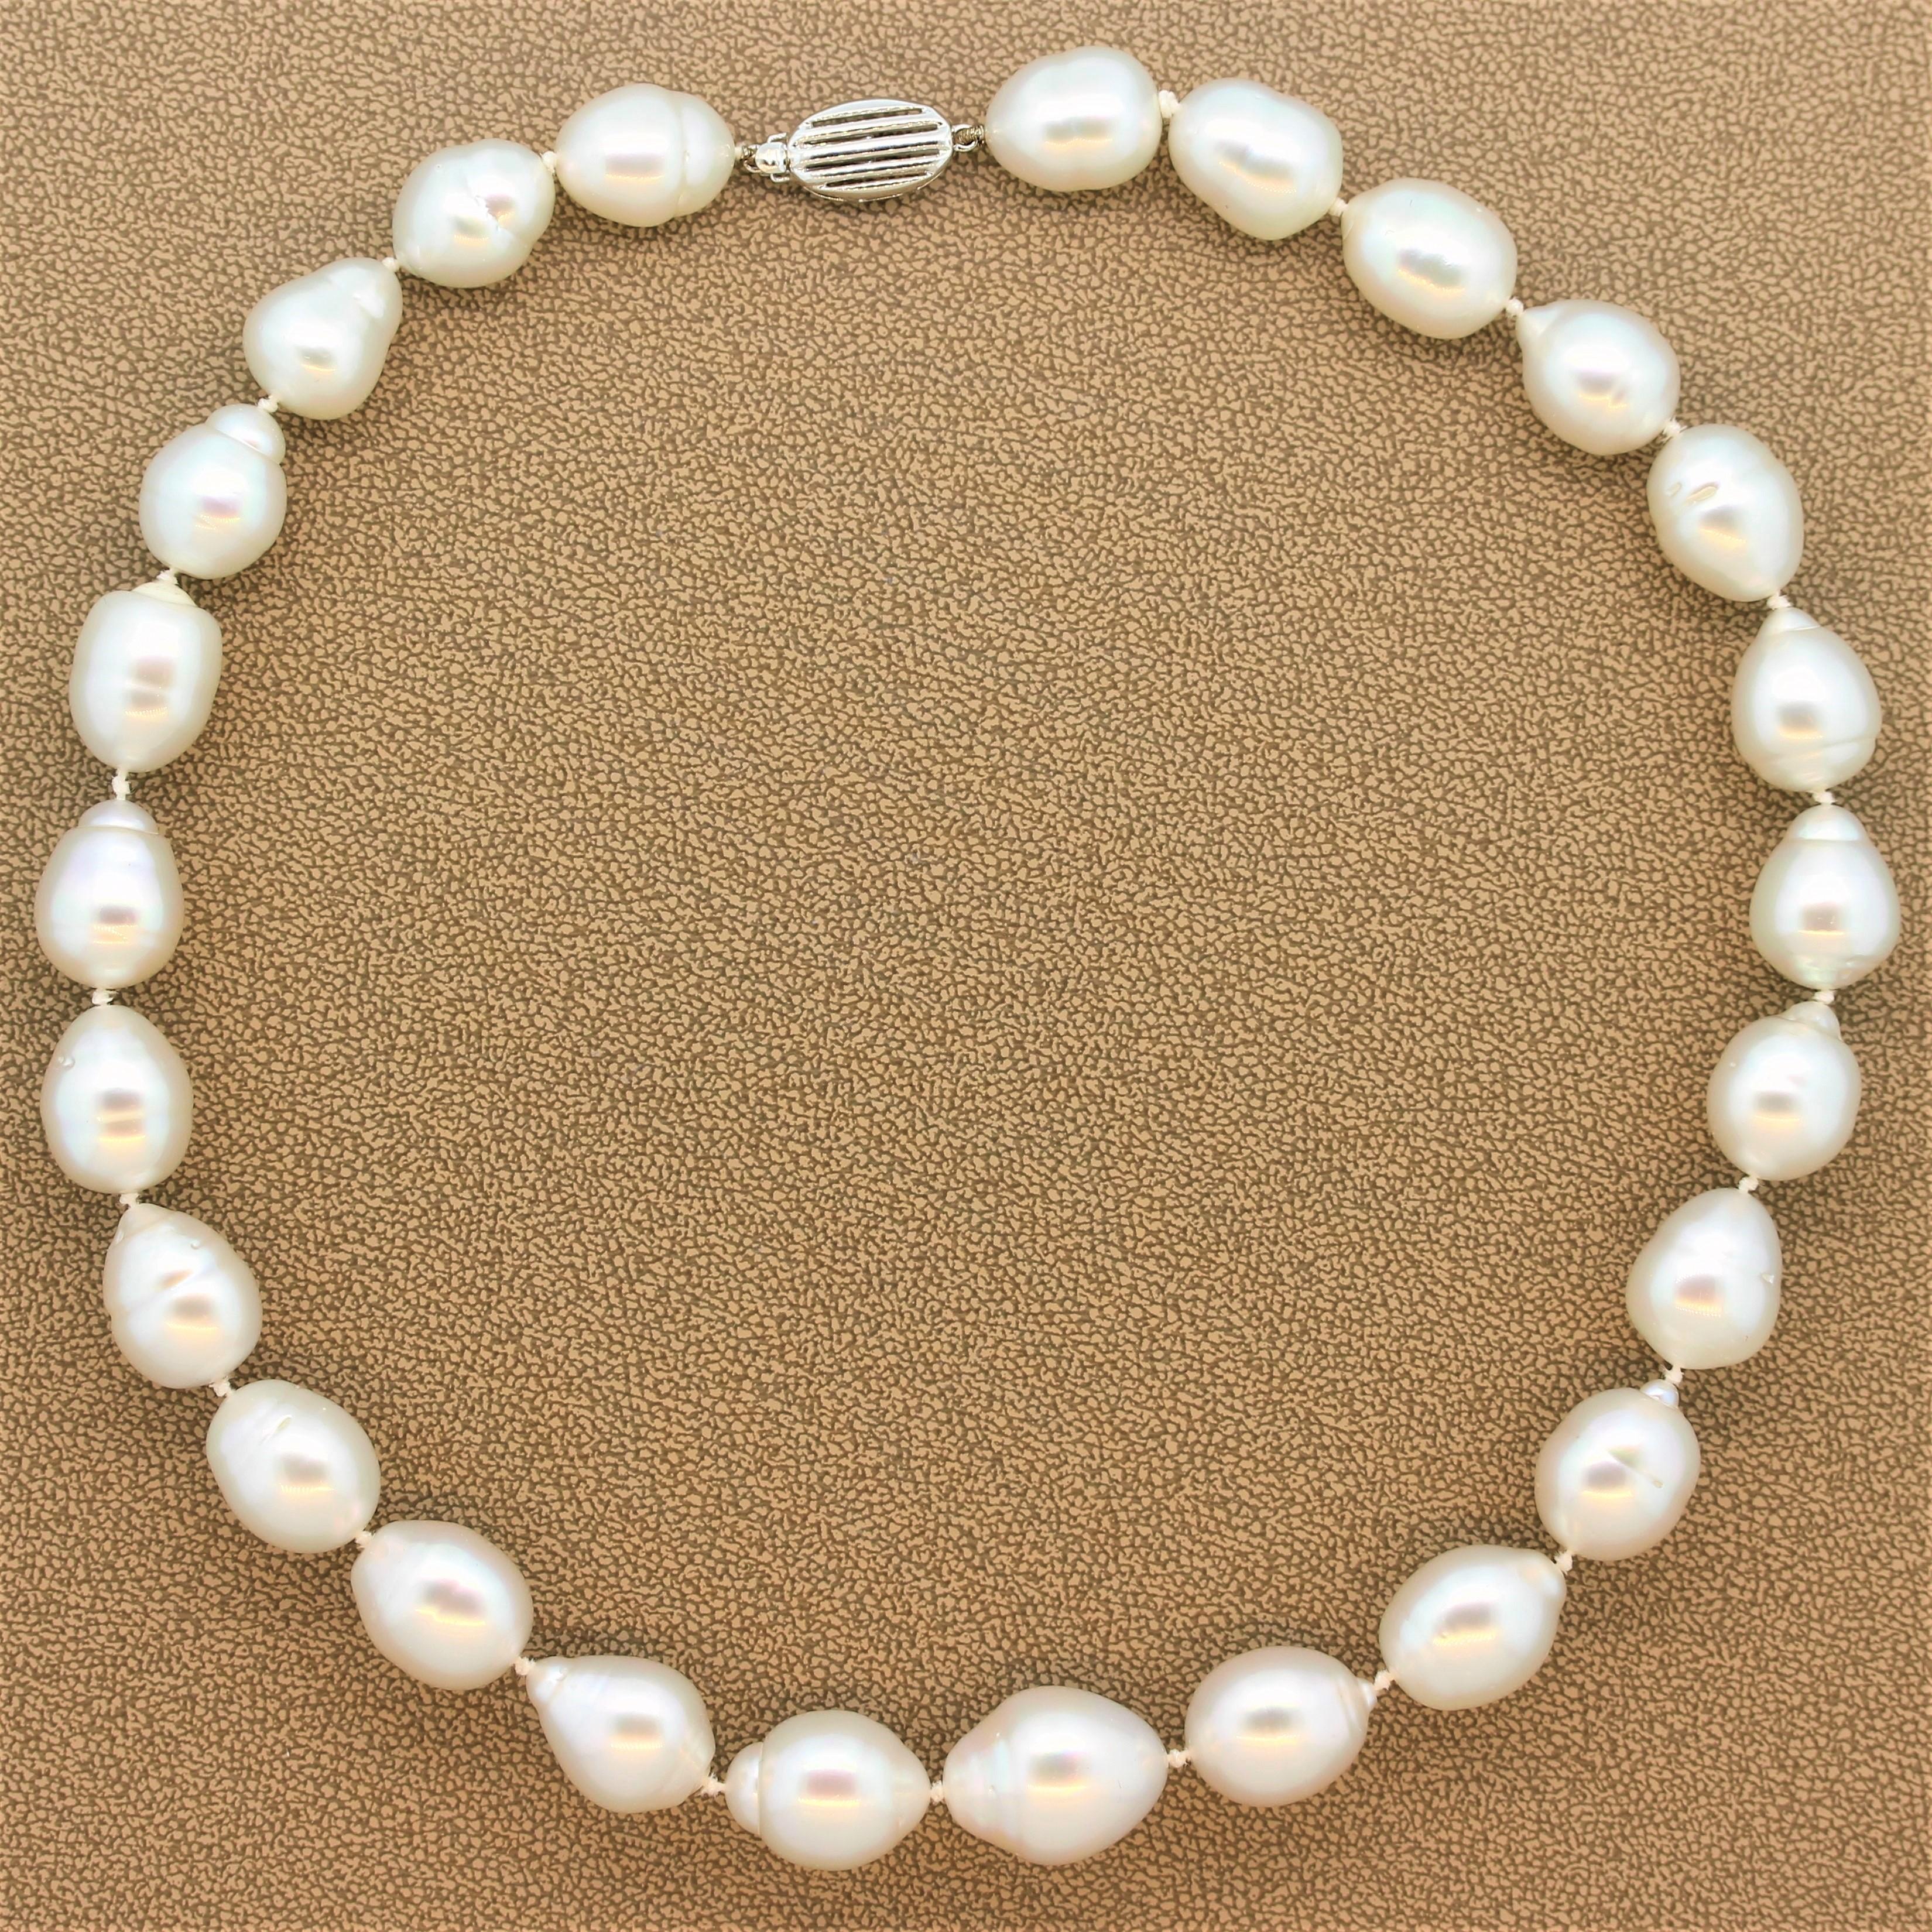 Dieses einsträngige Collier zeichnet sich durch seine atypischen, glänzenden Barockperlen aus. Die Größe der Perlen variiert von 14,99 mm bis 12,00 mm. Die schillernde Perlenkette hat einen sicheren Verschluss aus 14 Karat Weißgold.

Länge der